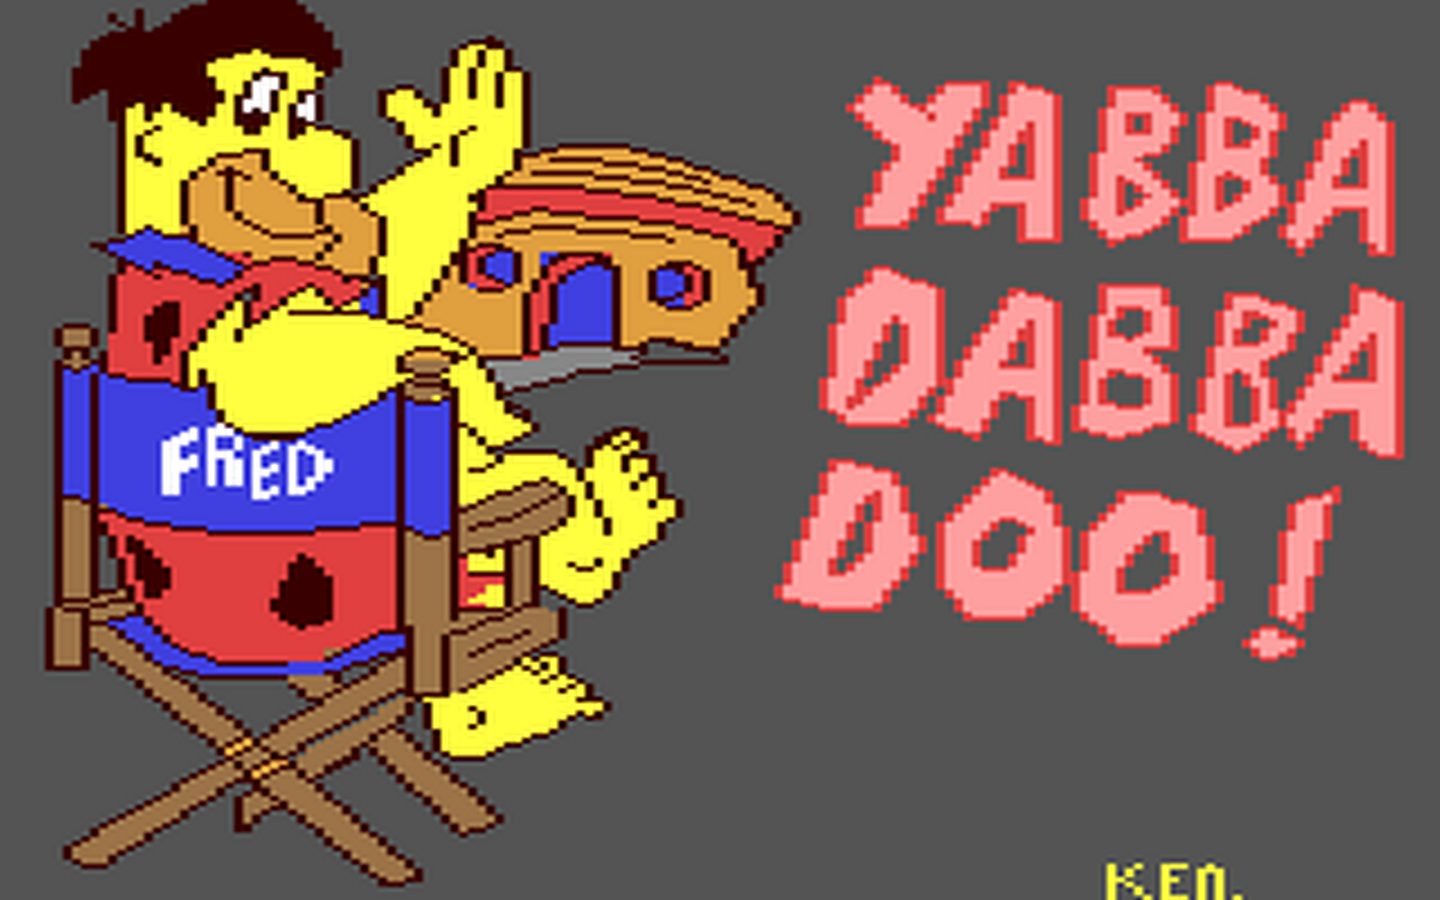 C64 GameBase Flintstones_-_Yabba-Dabba-Dooo! Argus_Press_Software_(APS)/Quicksilva 1986